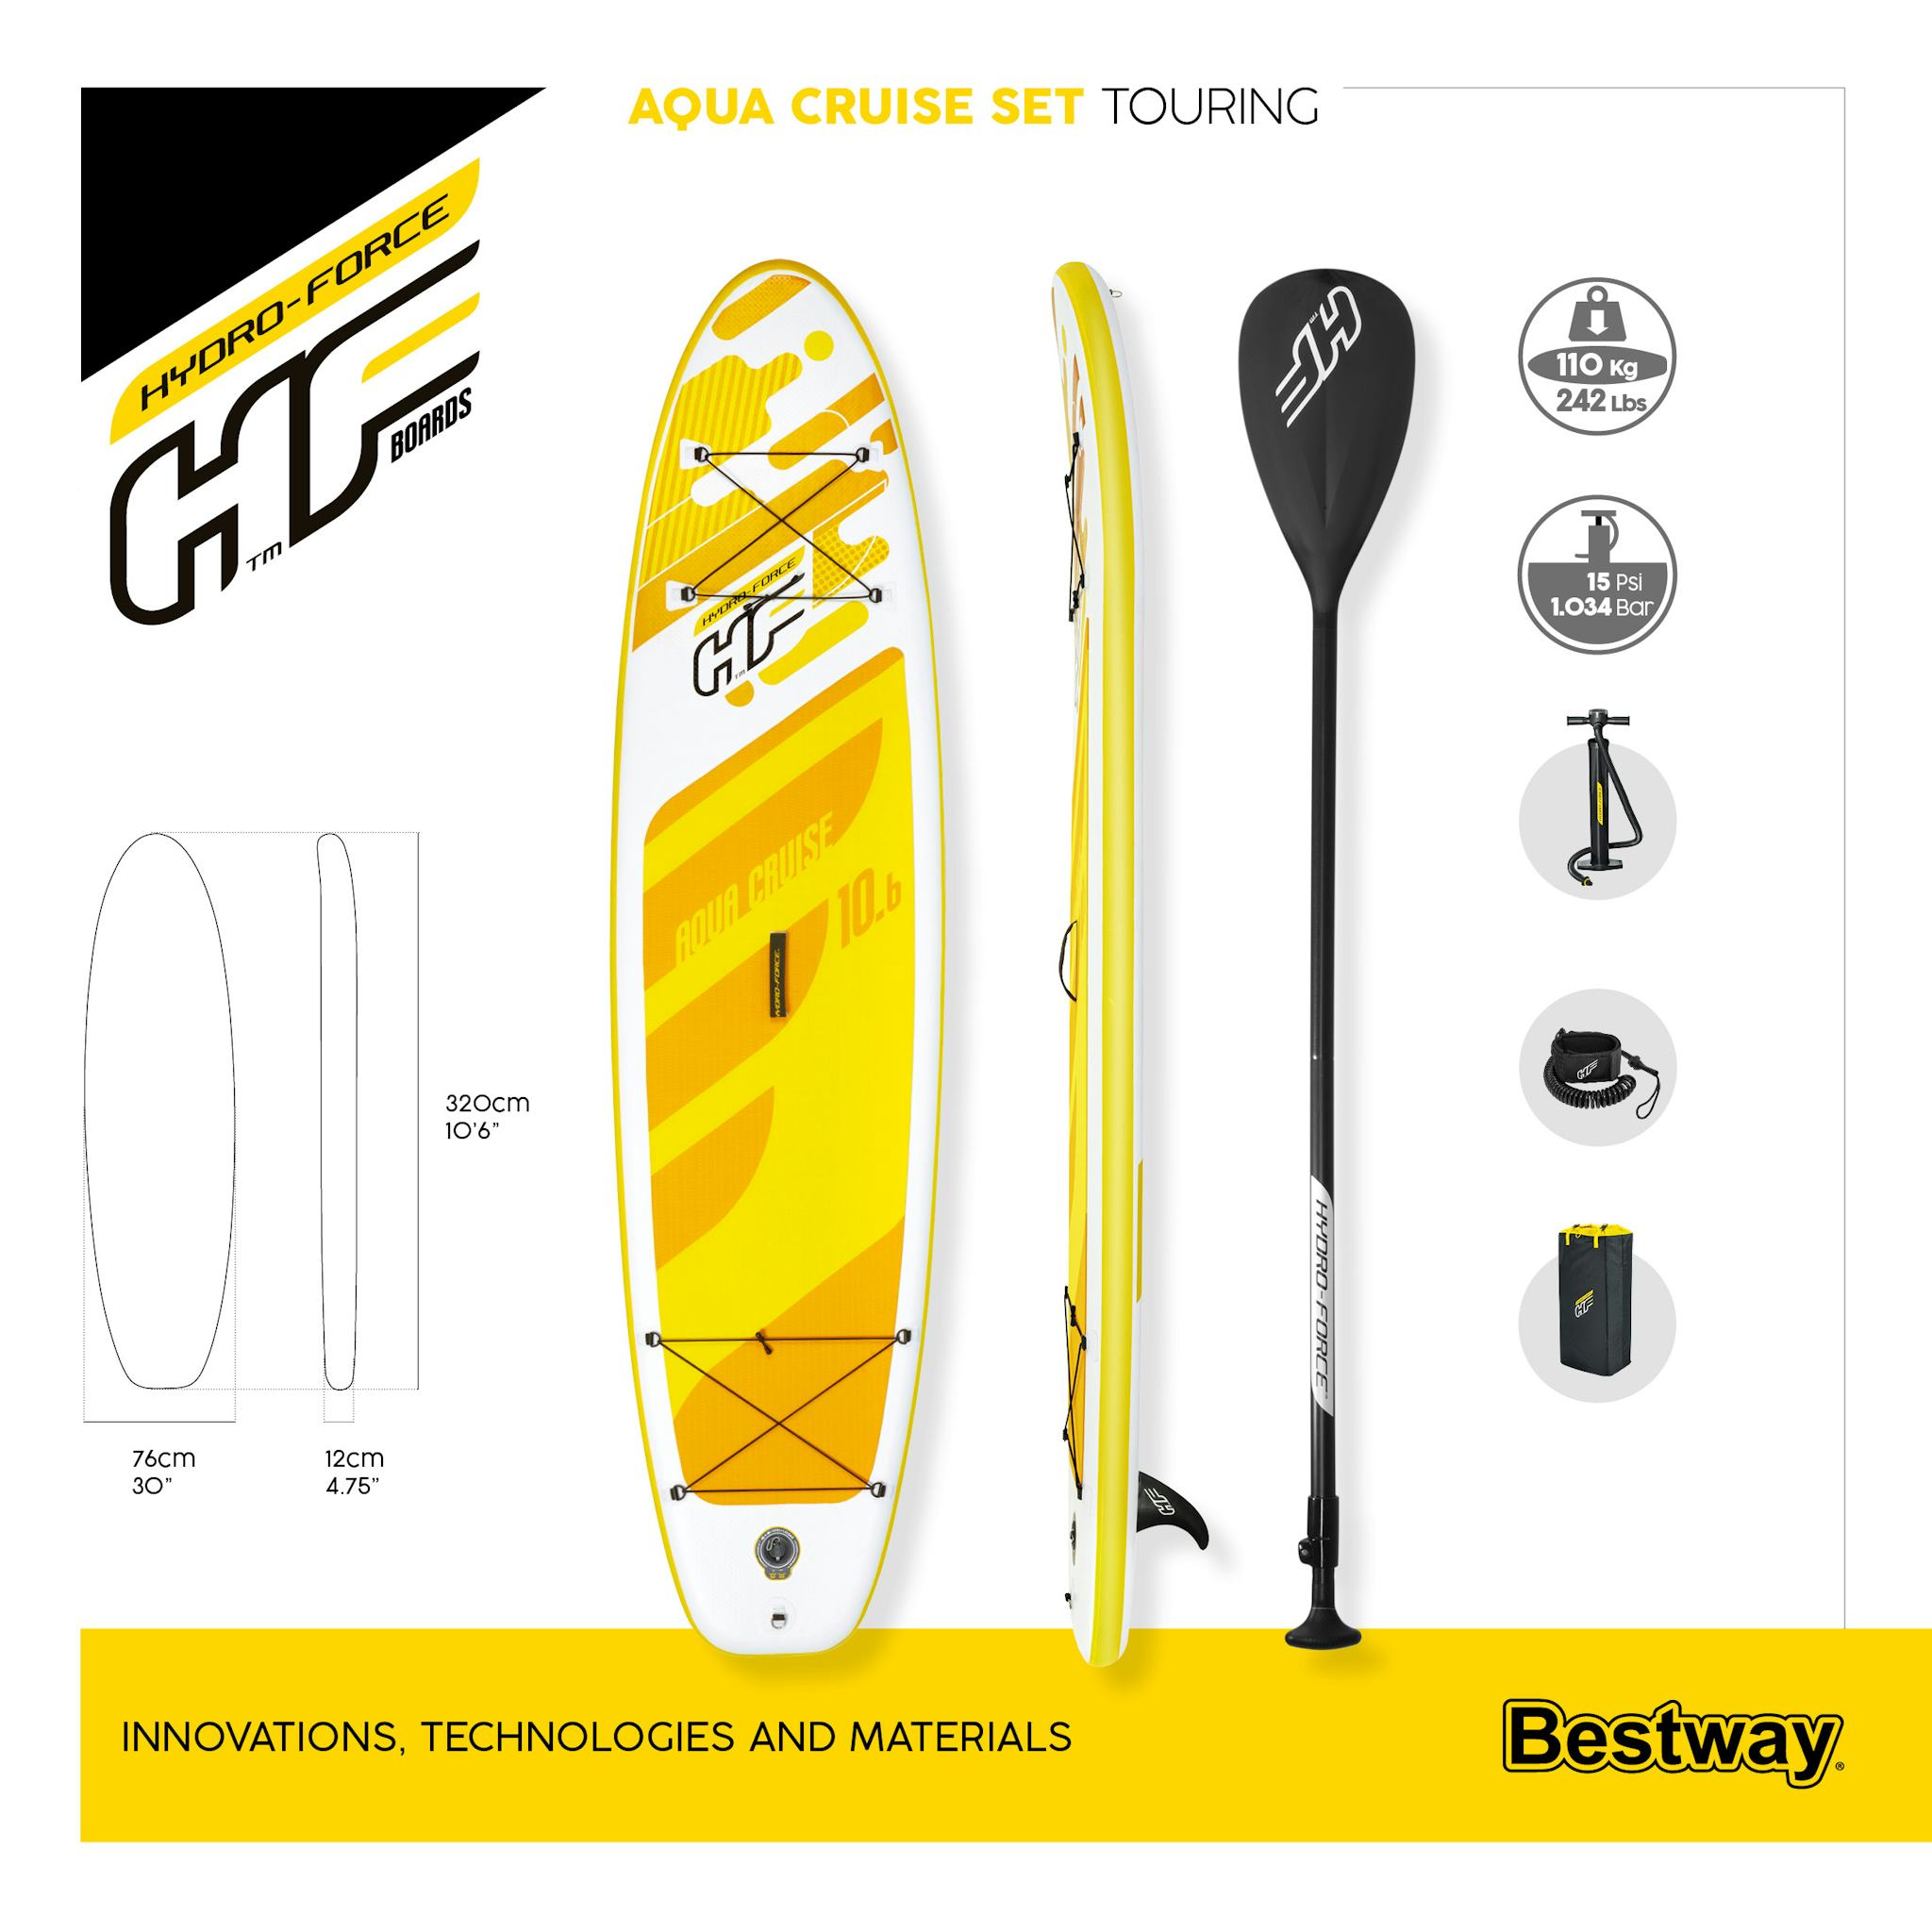 Sport Acquatici Tavola da SUP gonfiabile Aqua Cruise da 320x76 cm Bestway 9